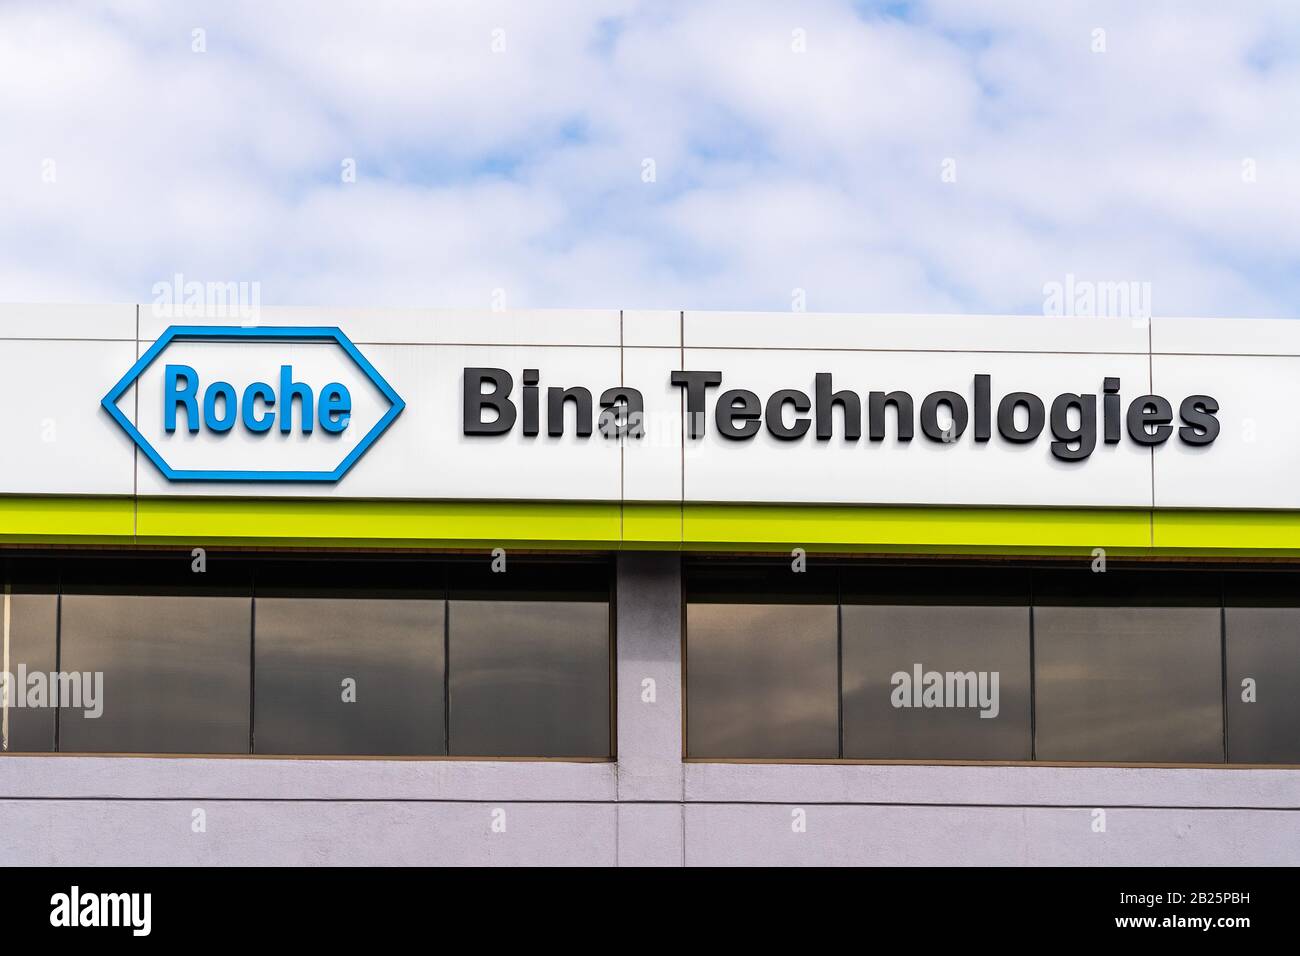 Feb 21, 2020 Belmont / Ca / USA - Roche Bina Technologies headquarters in Silicon Valley; Part of the Diagnostics division of F. Hoffmann-La Roche AG Stock Photo